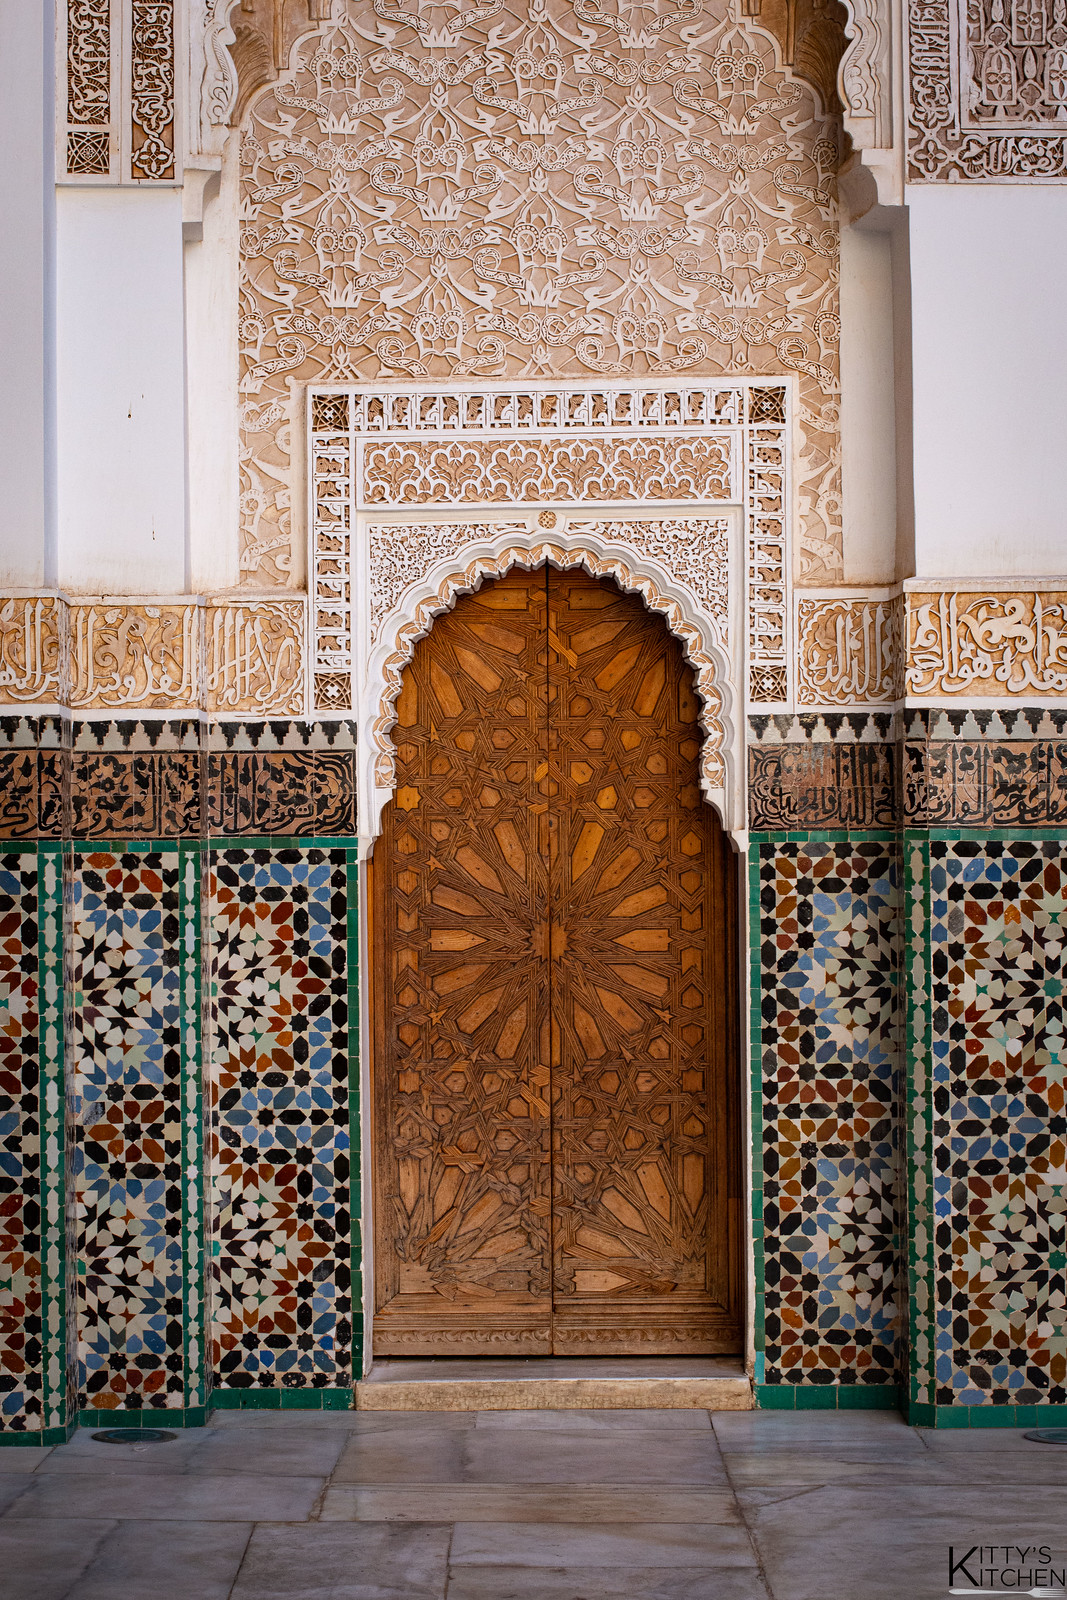 Marocco, Maroc, marrakech, mausoleo, porte, viaggi, travel maroc, marocco on tour